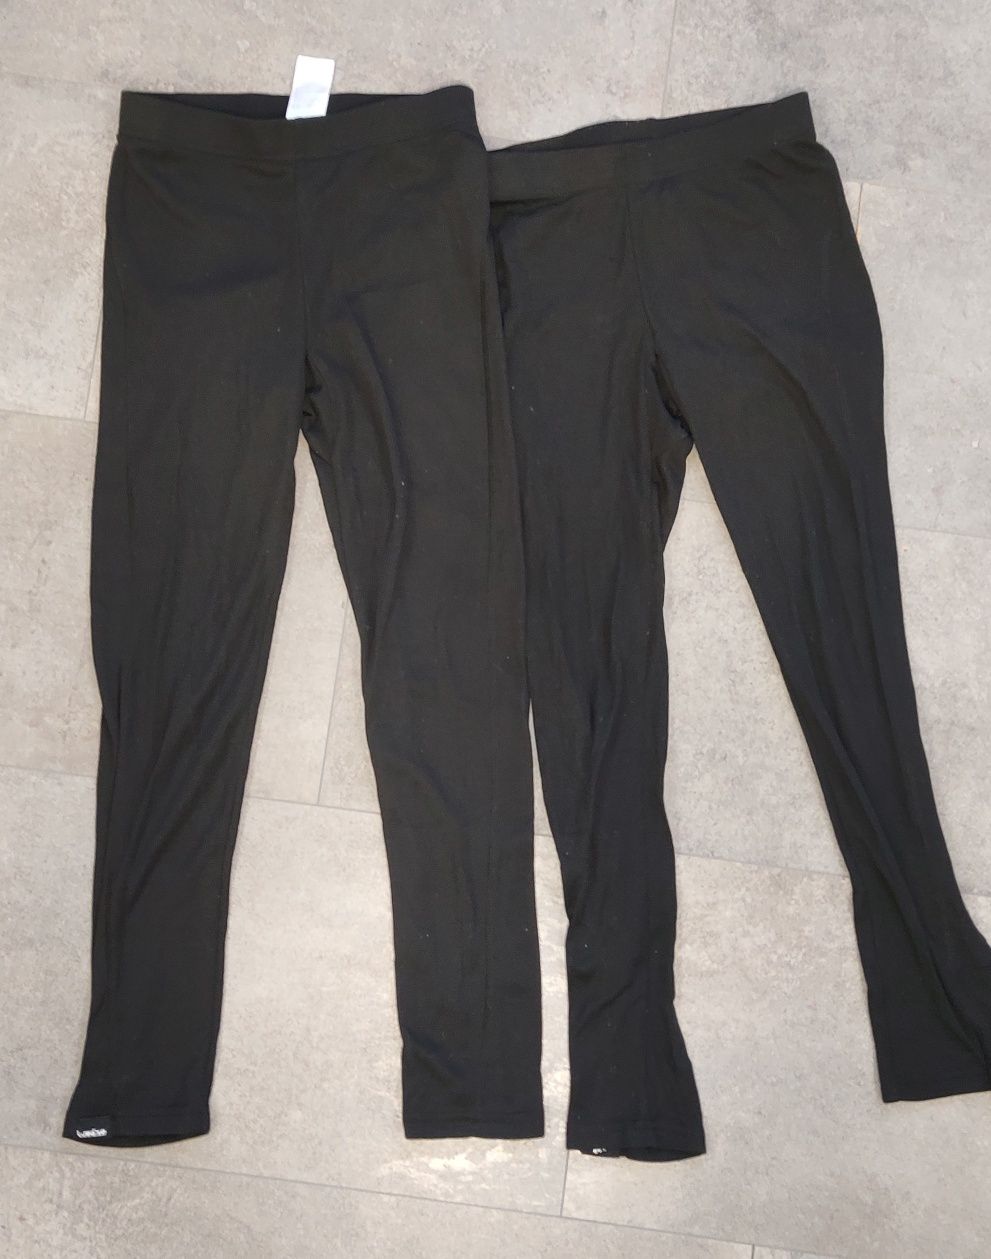 Dwie pary czarnych spodni termicznych Decathlon r. 143/152, 12 lst